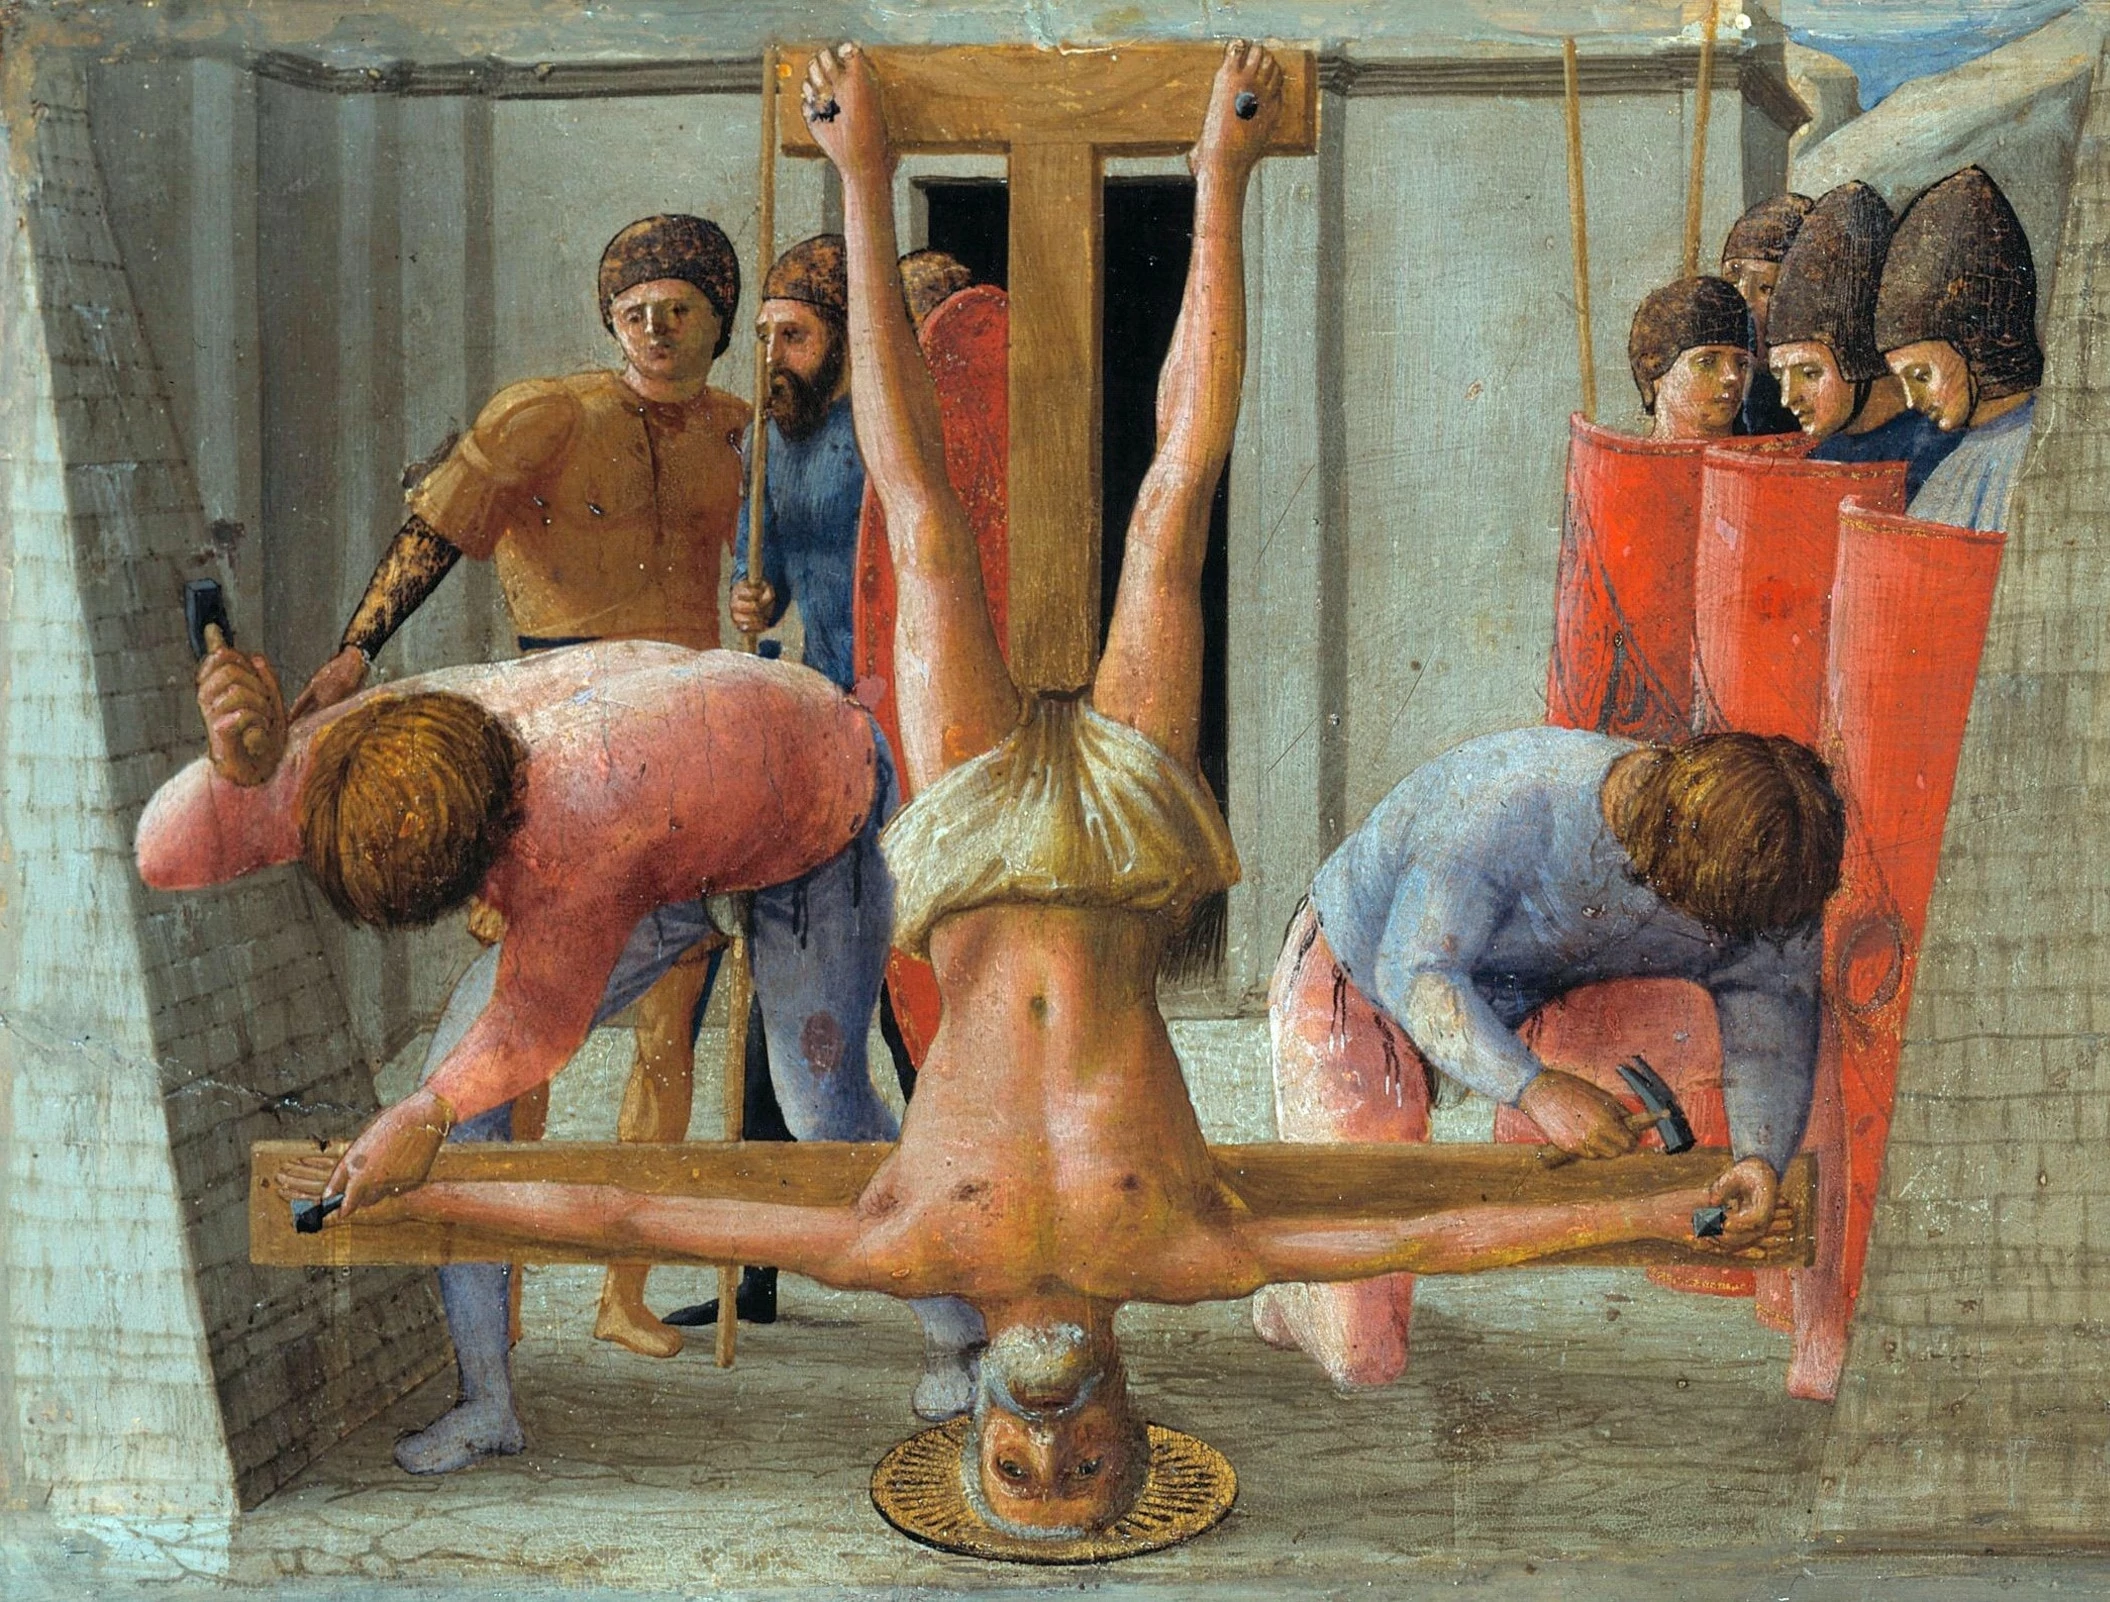 Masaccio, The Artists